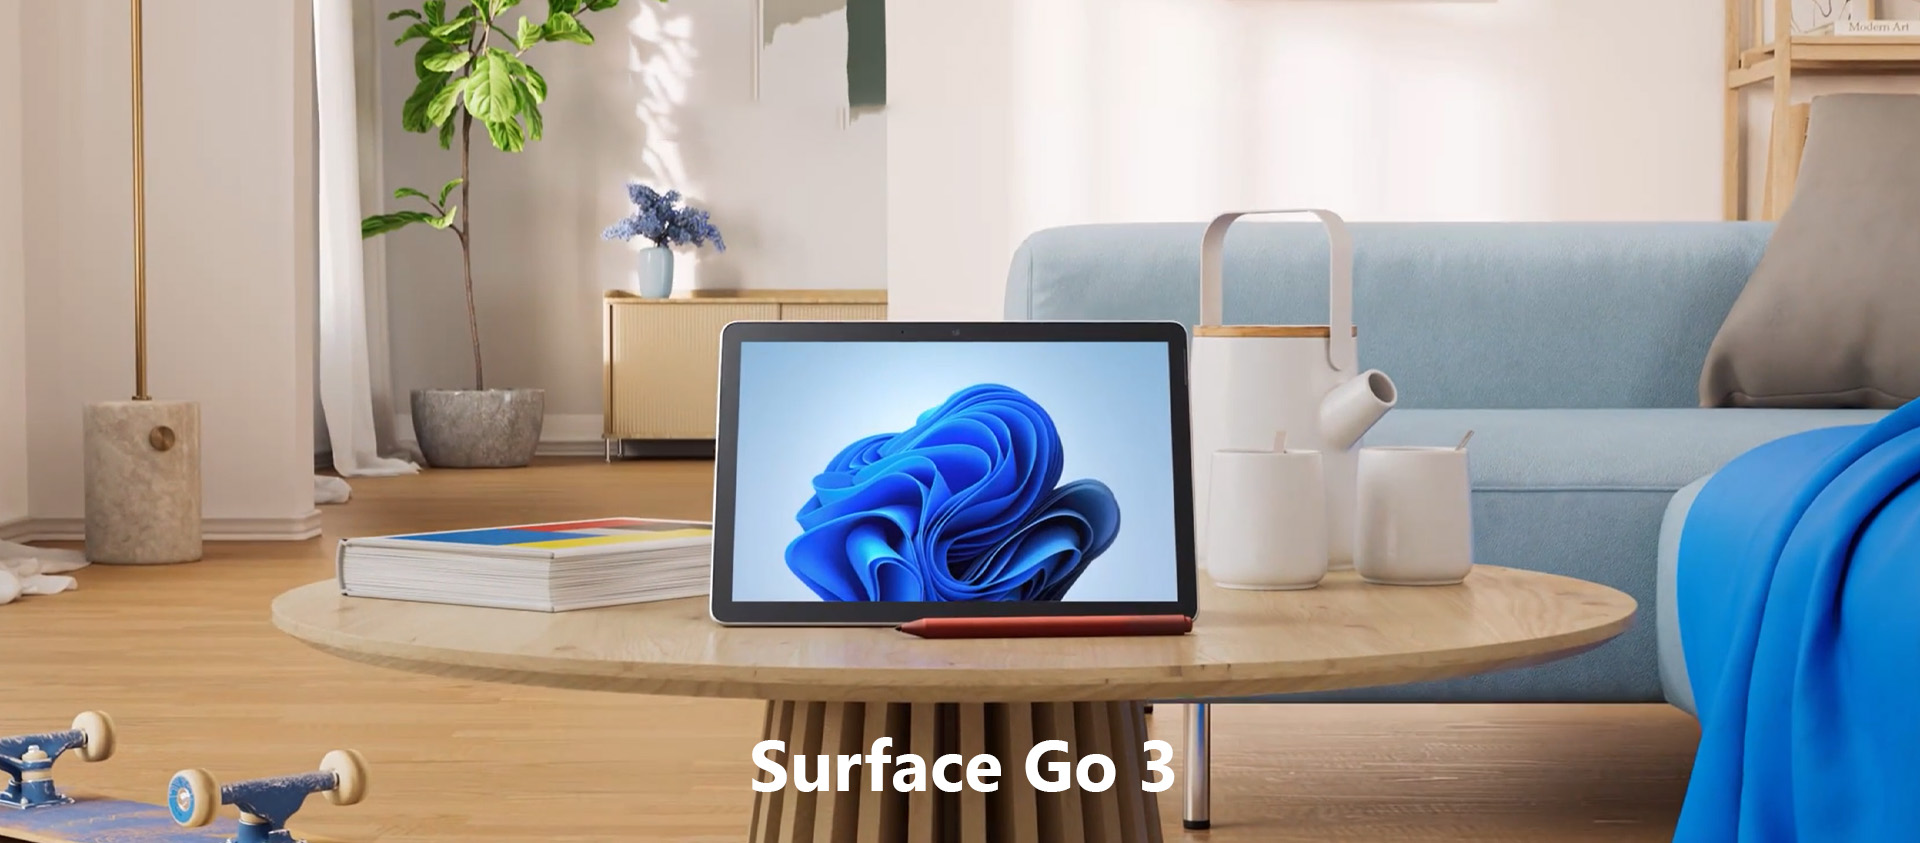 Surface Go 3 - створений для всієї сім'ї